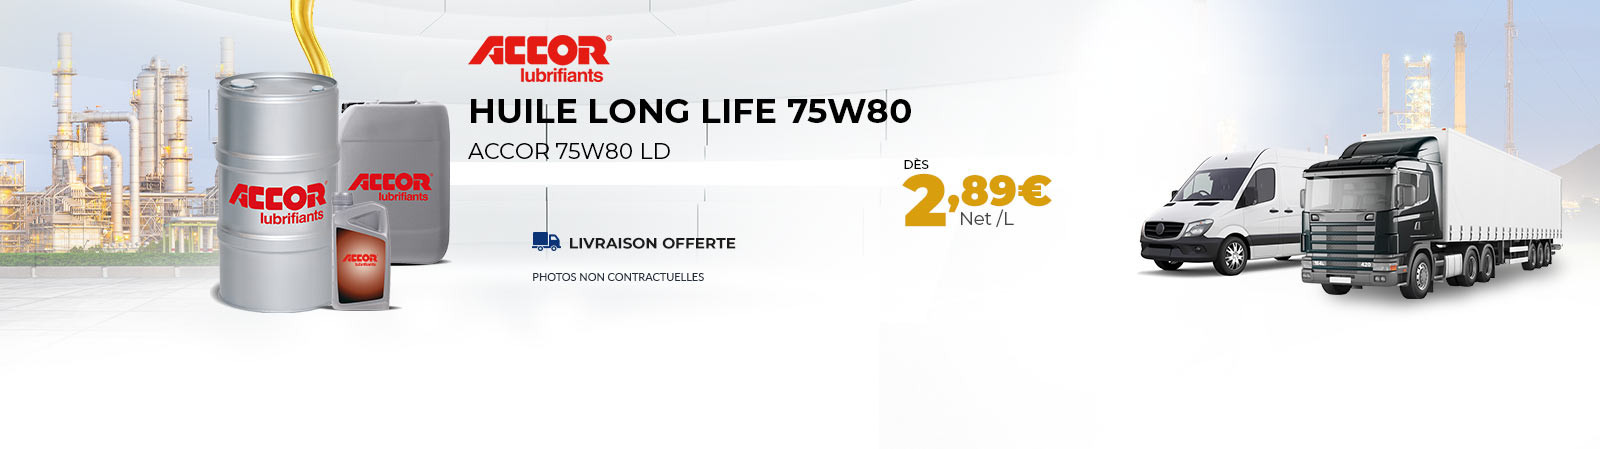 Huile Long Life 75w80 dès 2.89 €/l PORT OFFERT